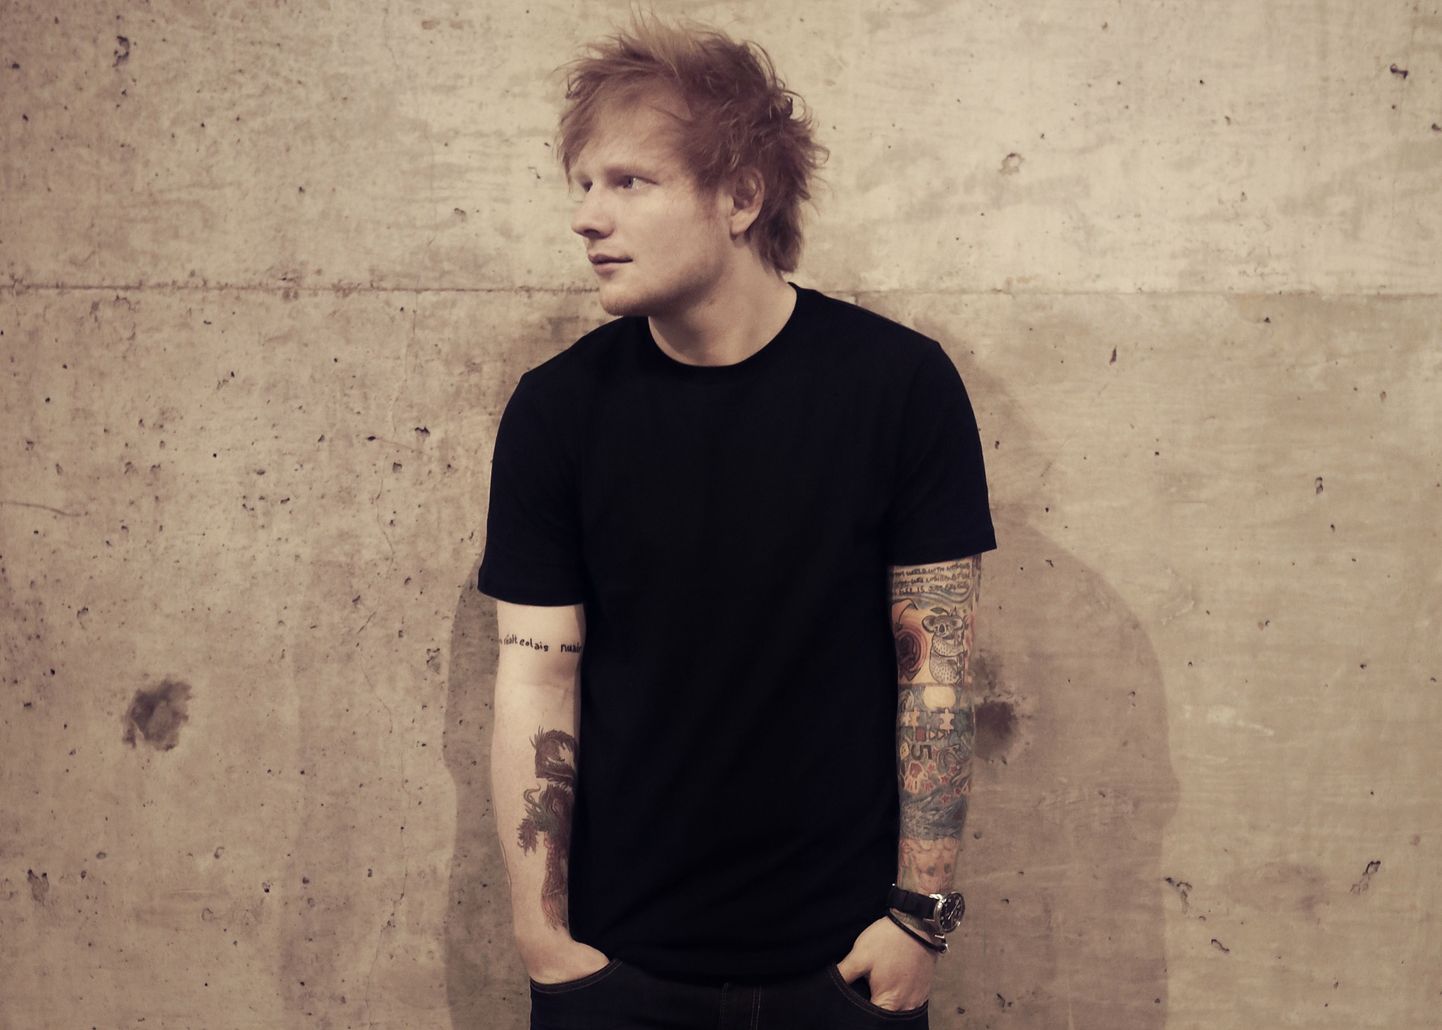 Briti parimaks meesartistiks valitud Ed Sheeran